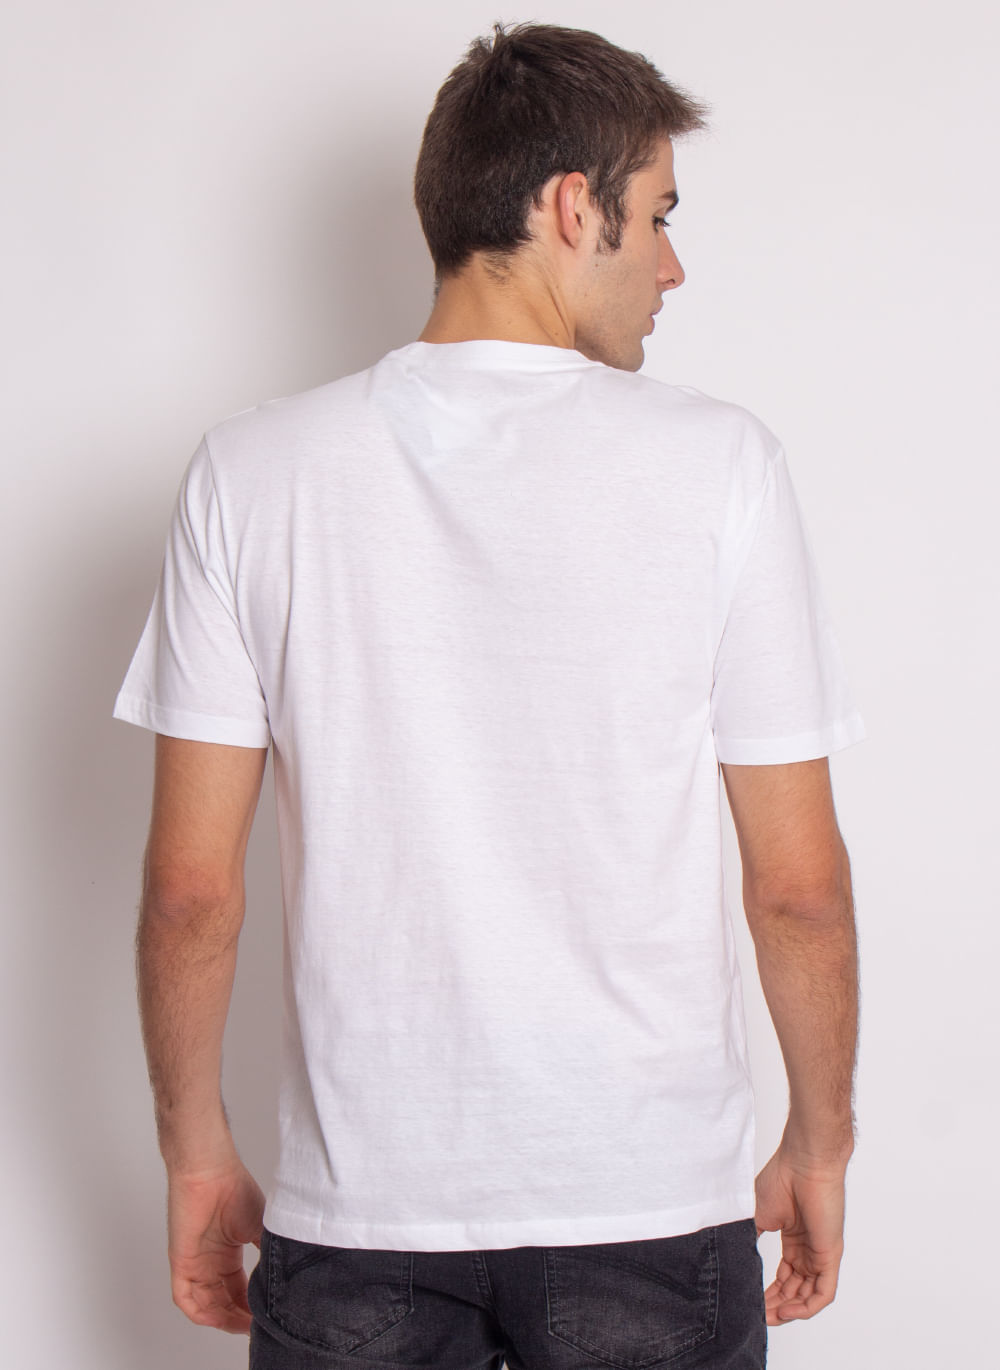 Camiseta-Branca-Lisa-Aleatory-Branco-P